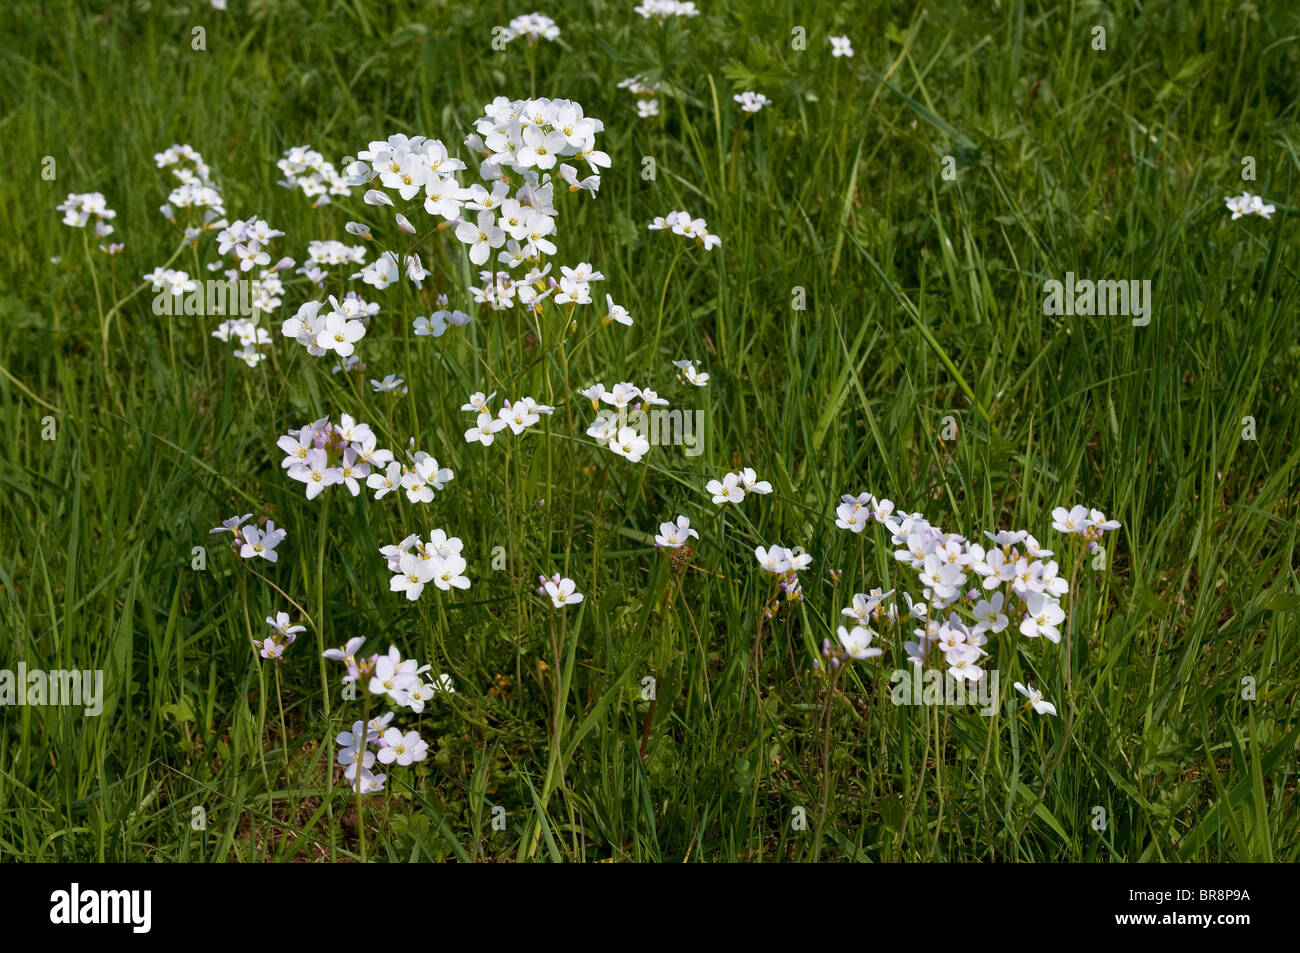 Kuckuck Blume, Ladys Kittel (Cardamine Pratensis), blühende Pflanzen auf einer Wiese. Stockfoto